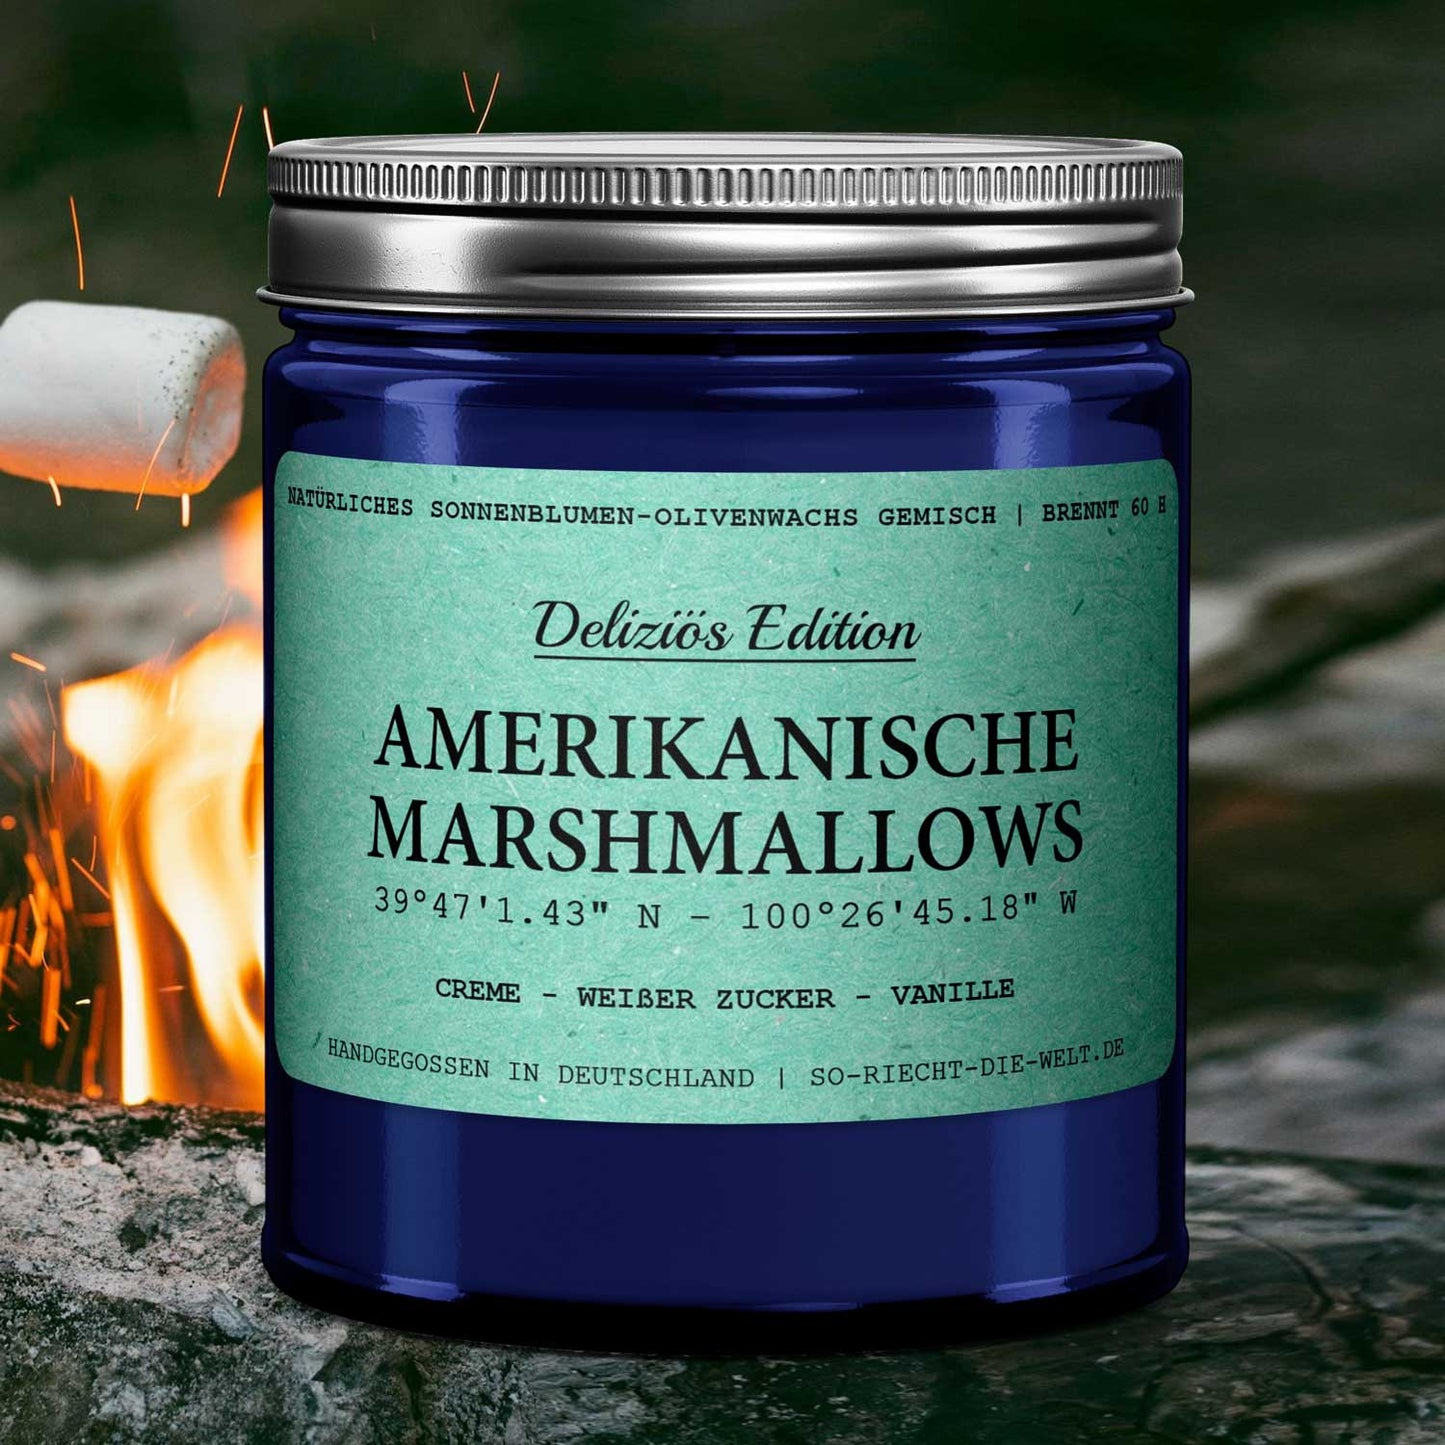 Amerikanische Marshmallows Duftkerze - Deliziös Edition - Creme | Weißer Zucker | Vanille